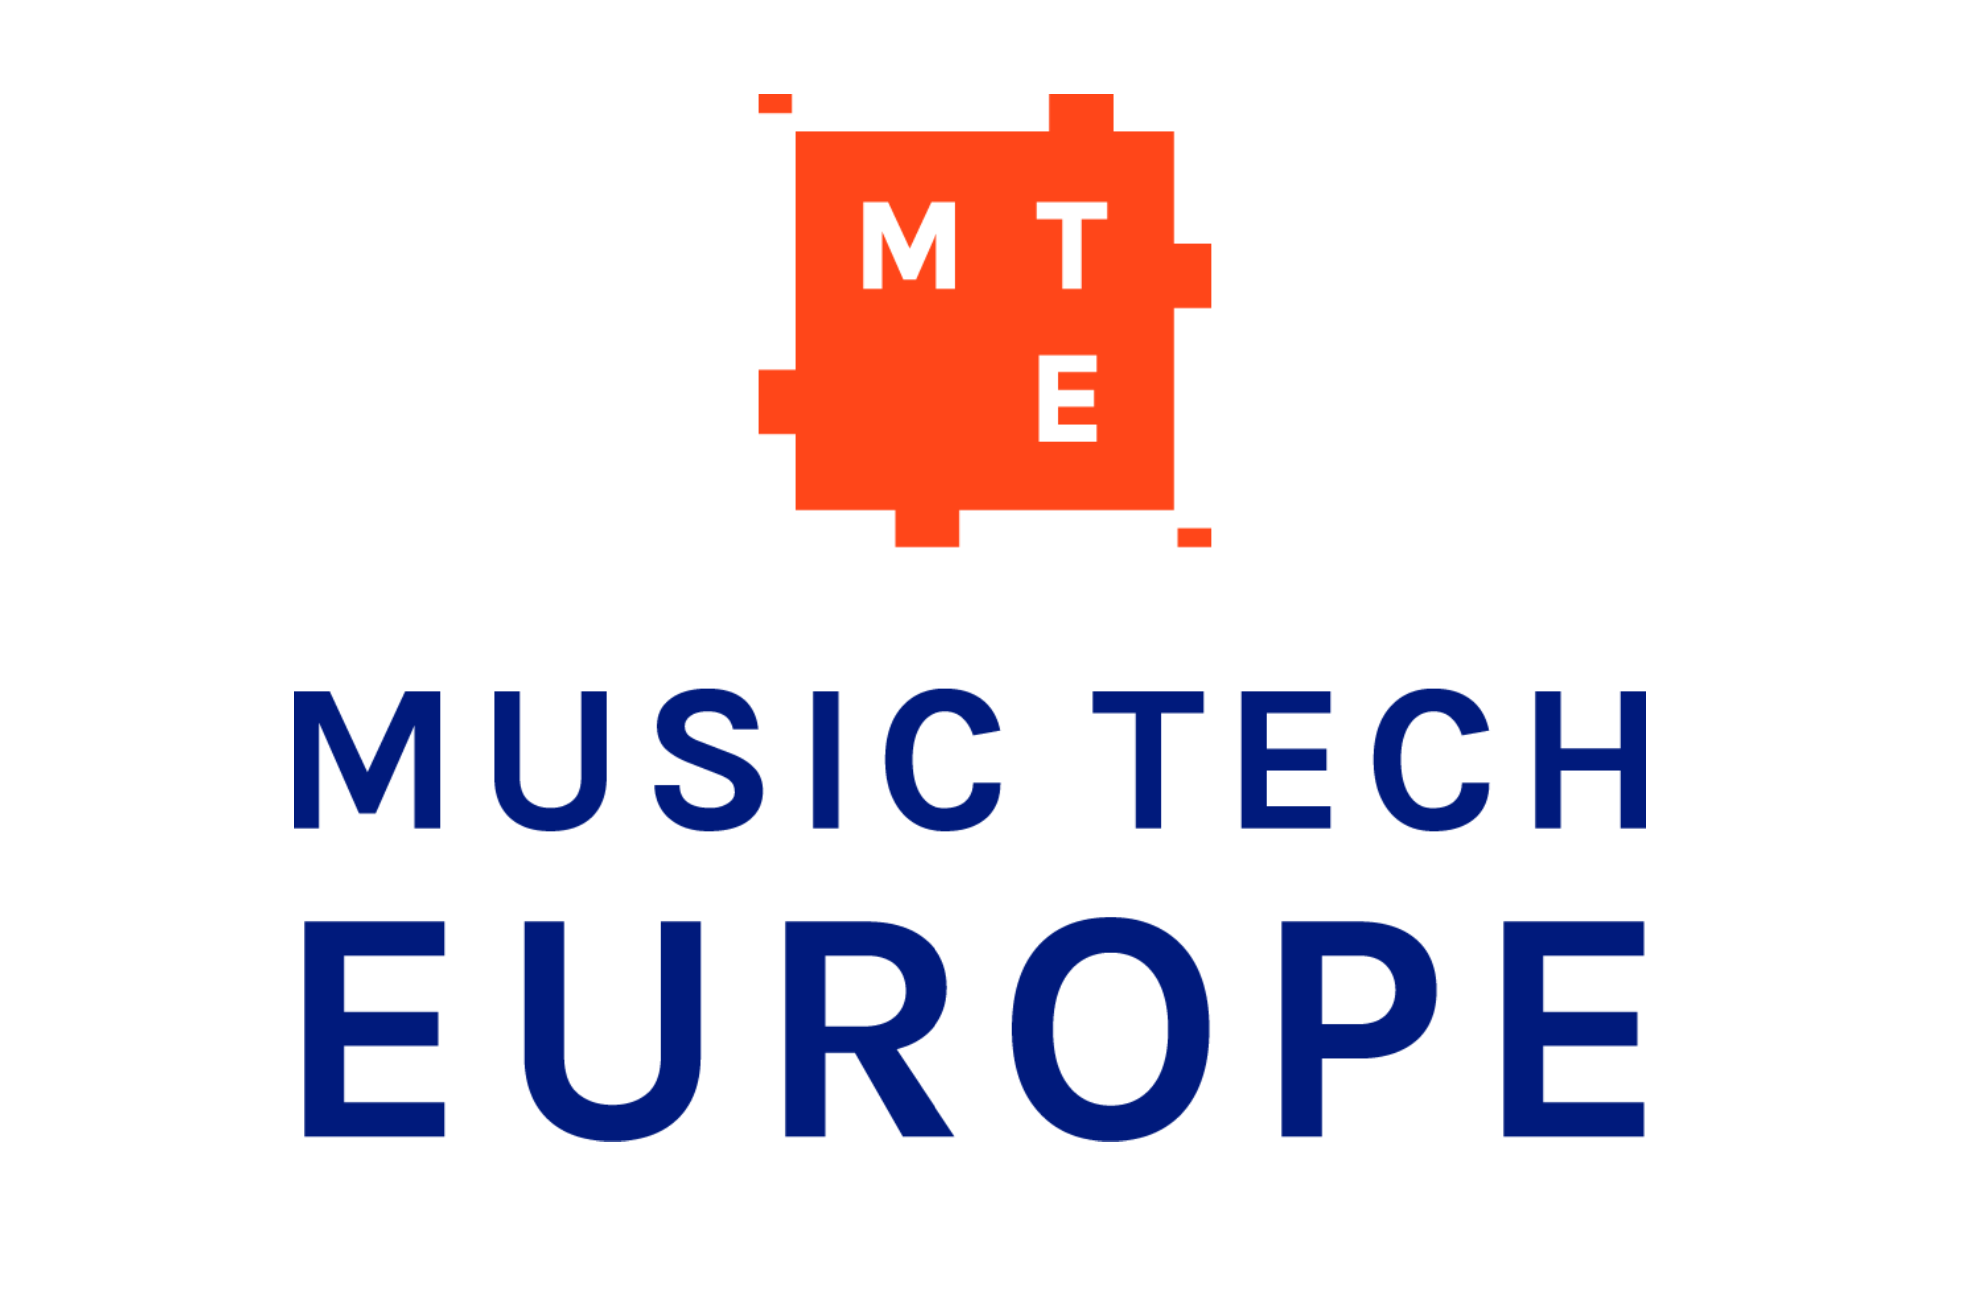 New European Music-Tech Programme Seeking Applications